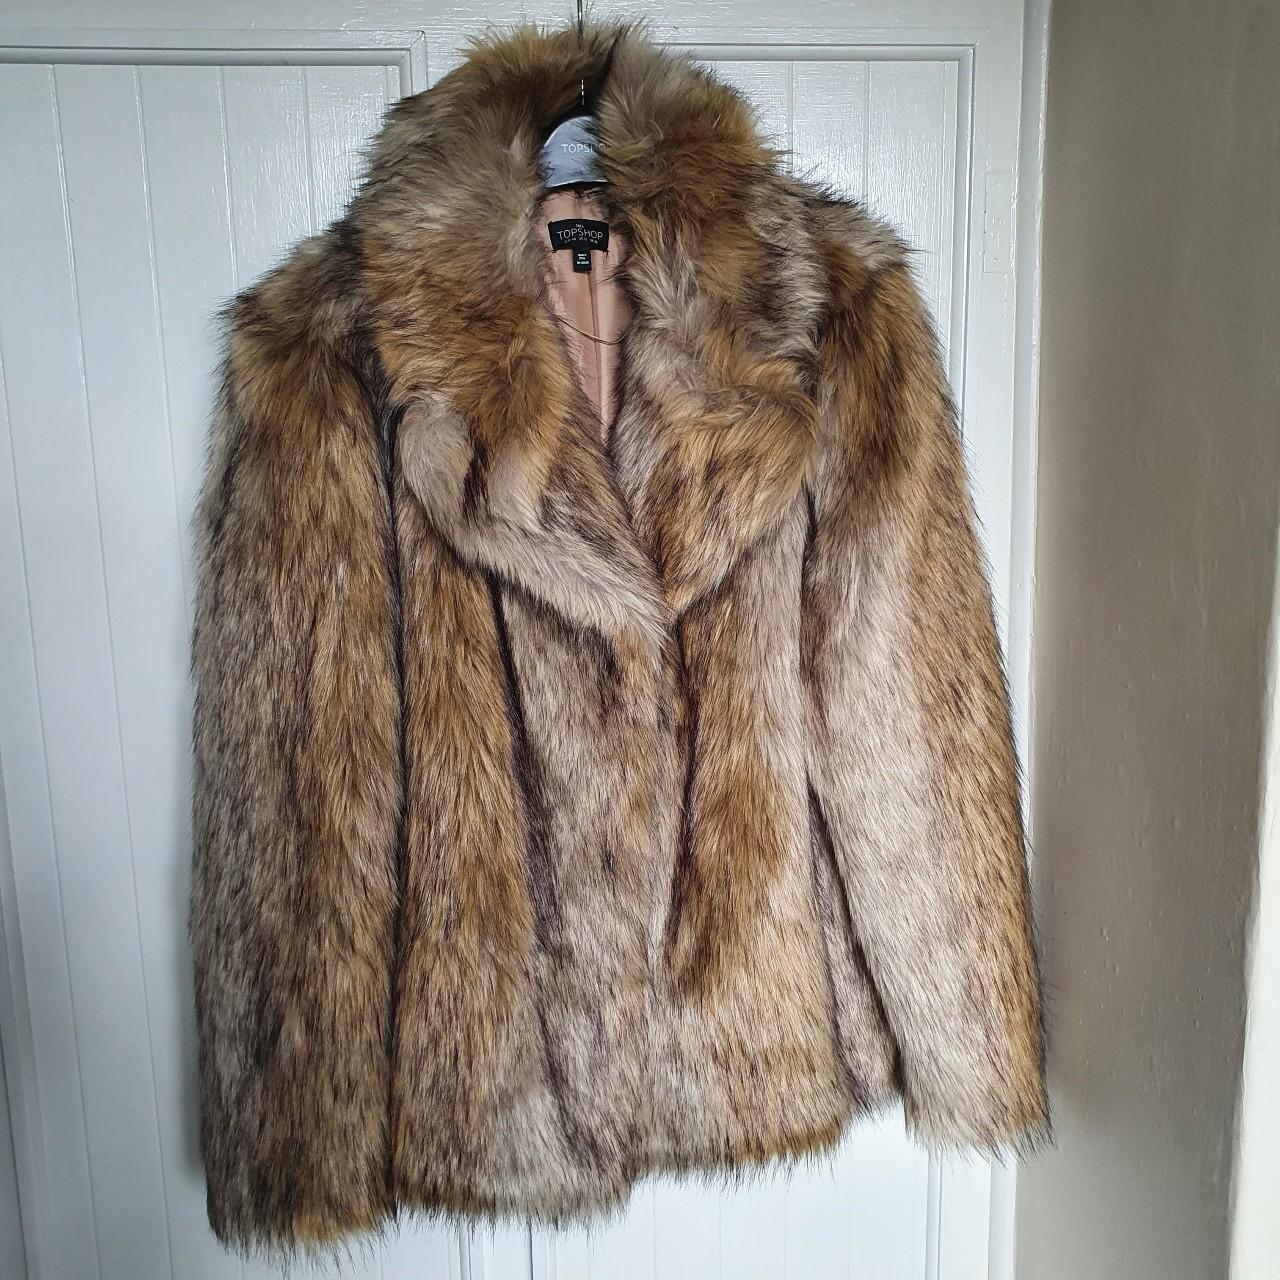 Topshop faux fur coat, Beautiful thick #topshop faux